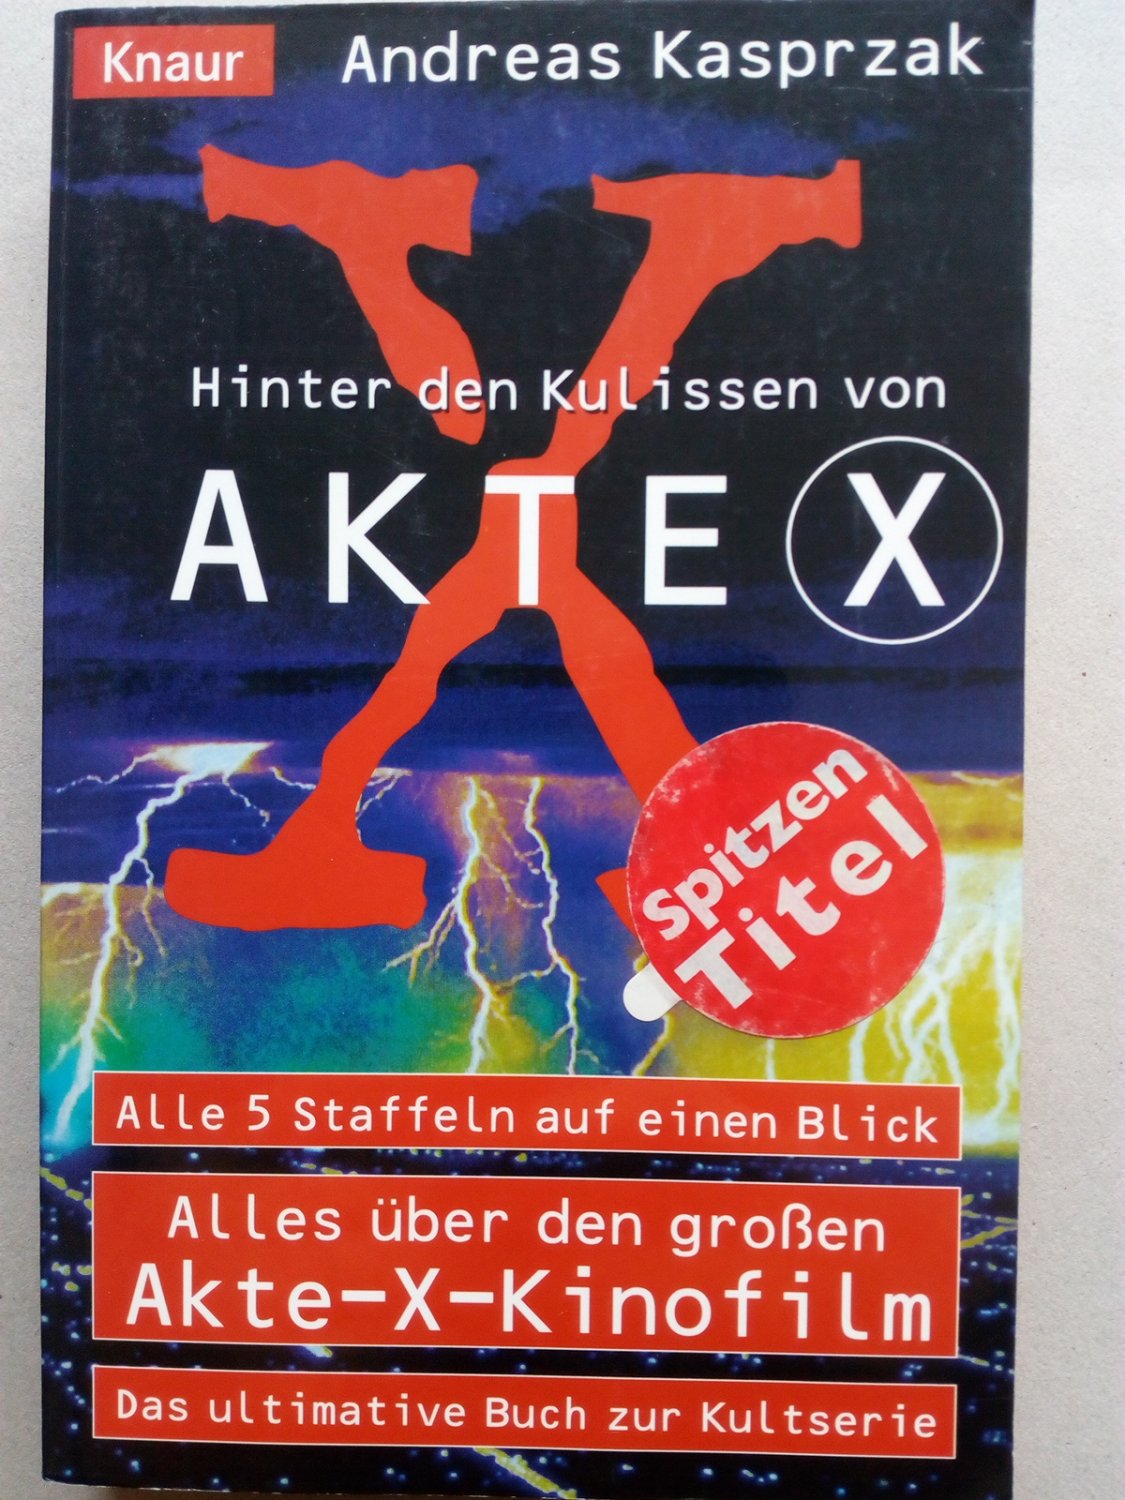 Hinter den Kulissen von Akte X alle fünf Staffeln auf einen Blick, alles über den großen Akte-X-Kinofilm ; das ultimative Buch zur Kultserie - Kasprzak, Andreas